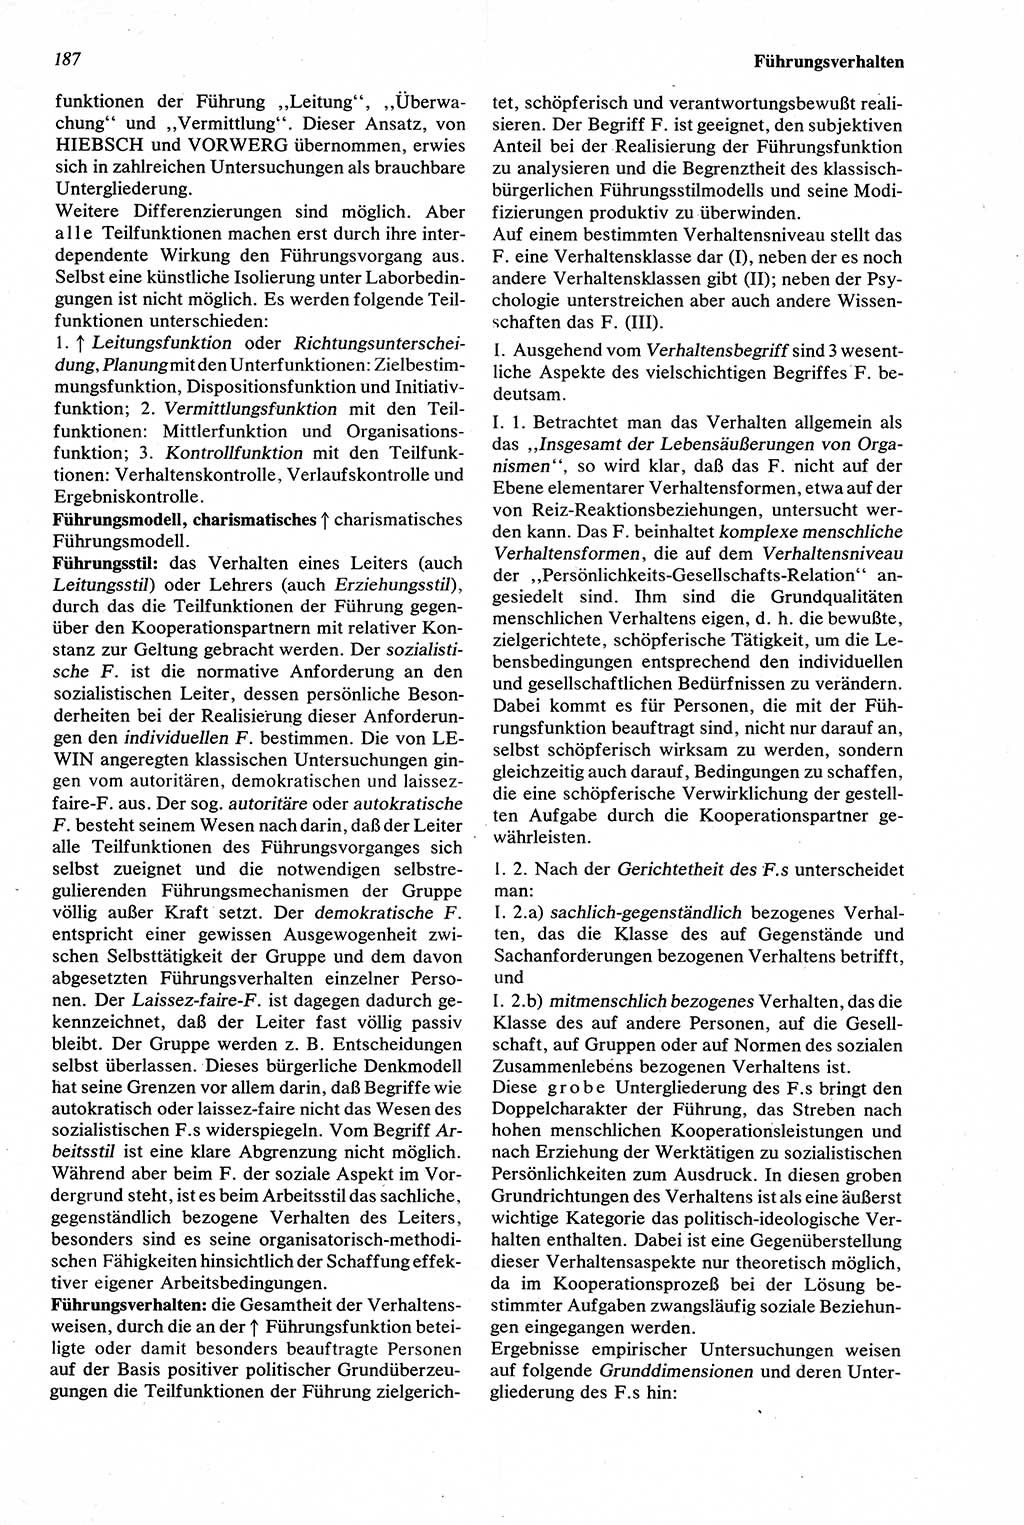 Wörterbuch der Psychologie [Deutsche Demokratische Republik (DDR)] 1976, Seite 187 (Wb. Psych. DDR 1976, S. 187)